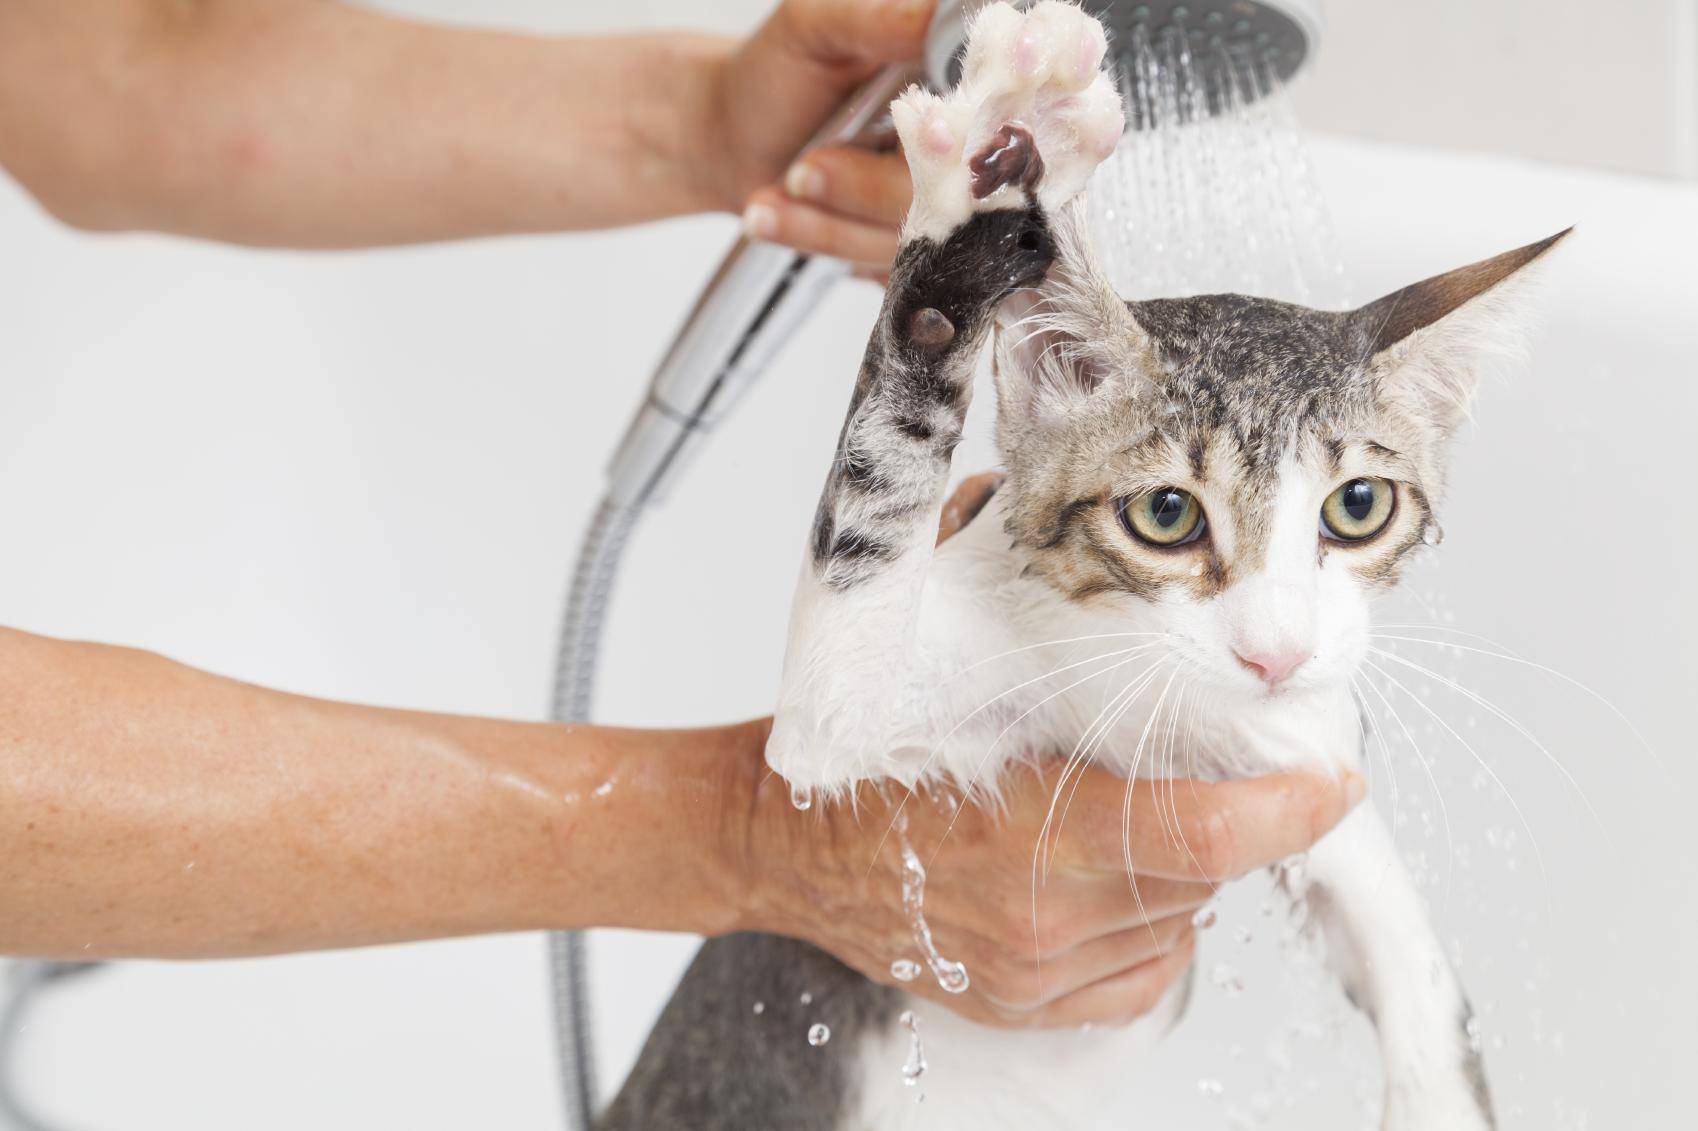 Как часто надо мыть кота